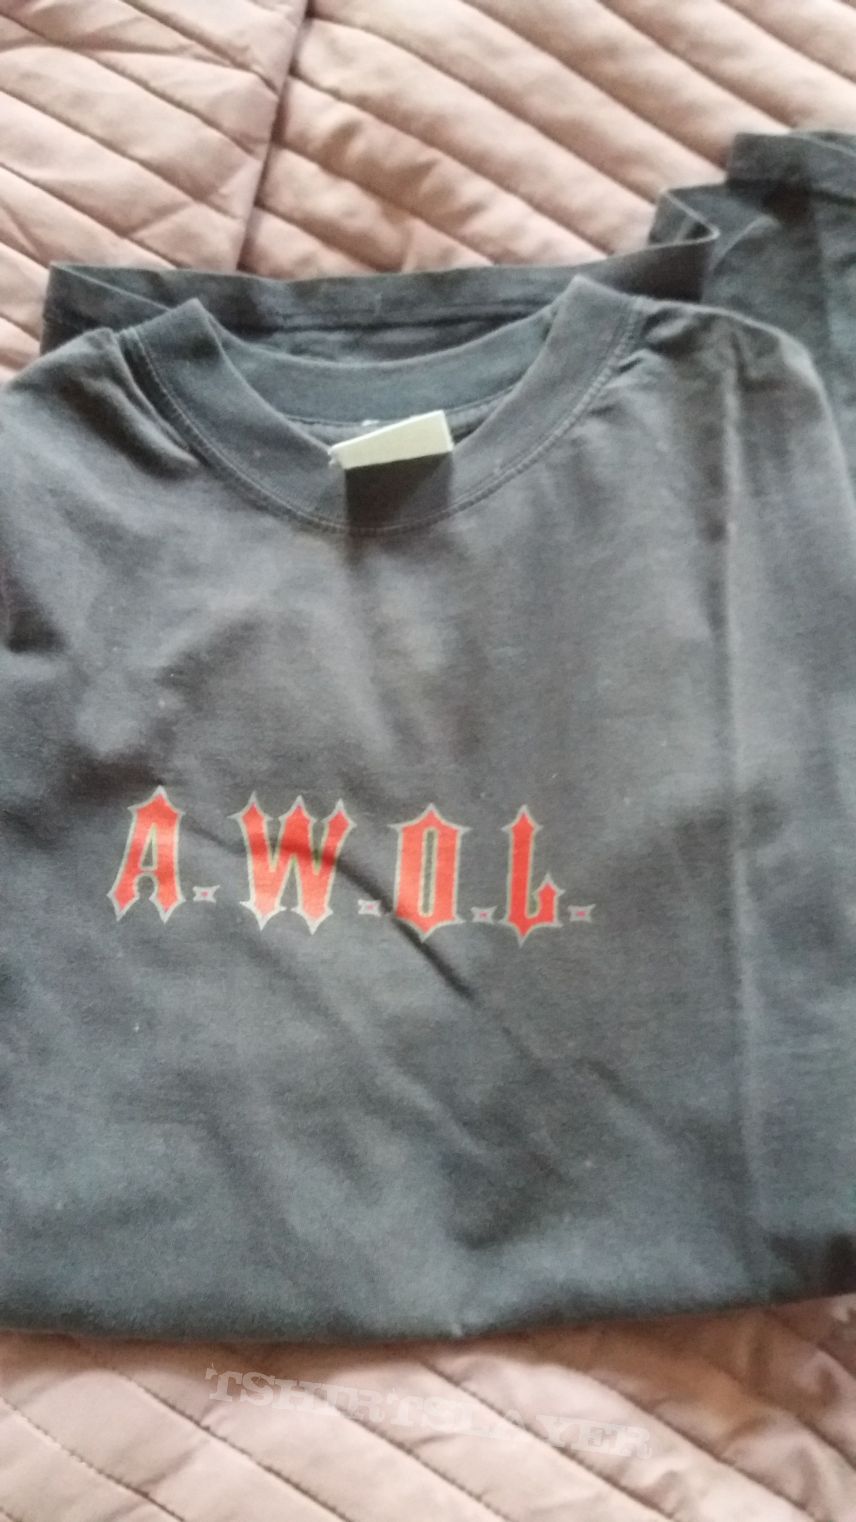 A.W.O.L. shirt 1997